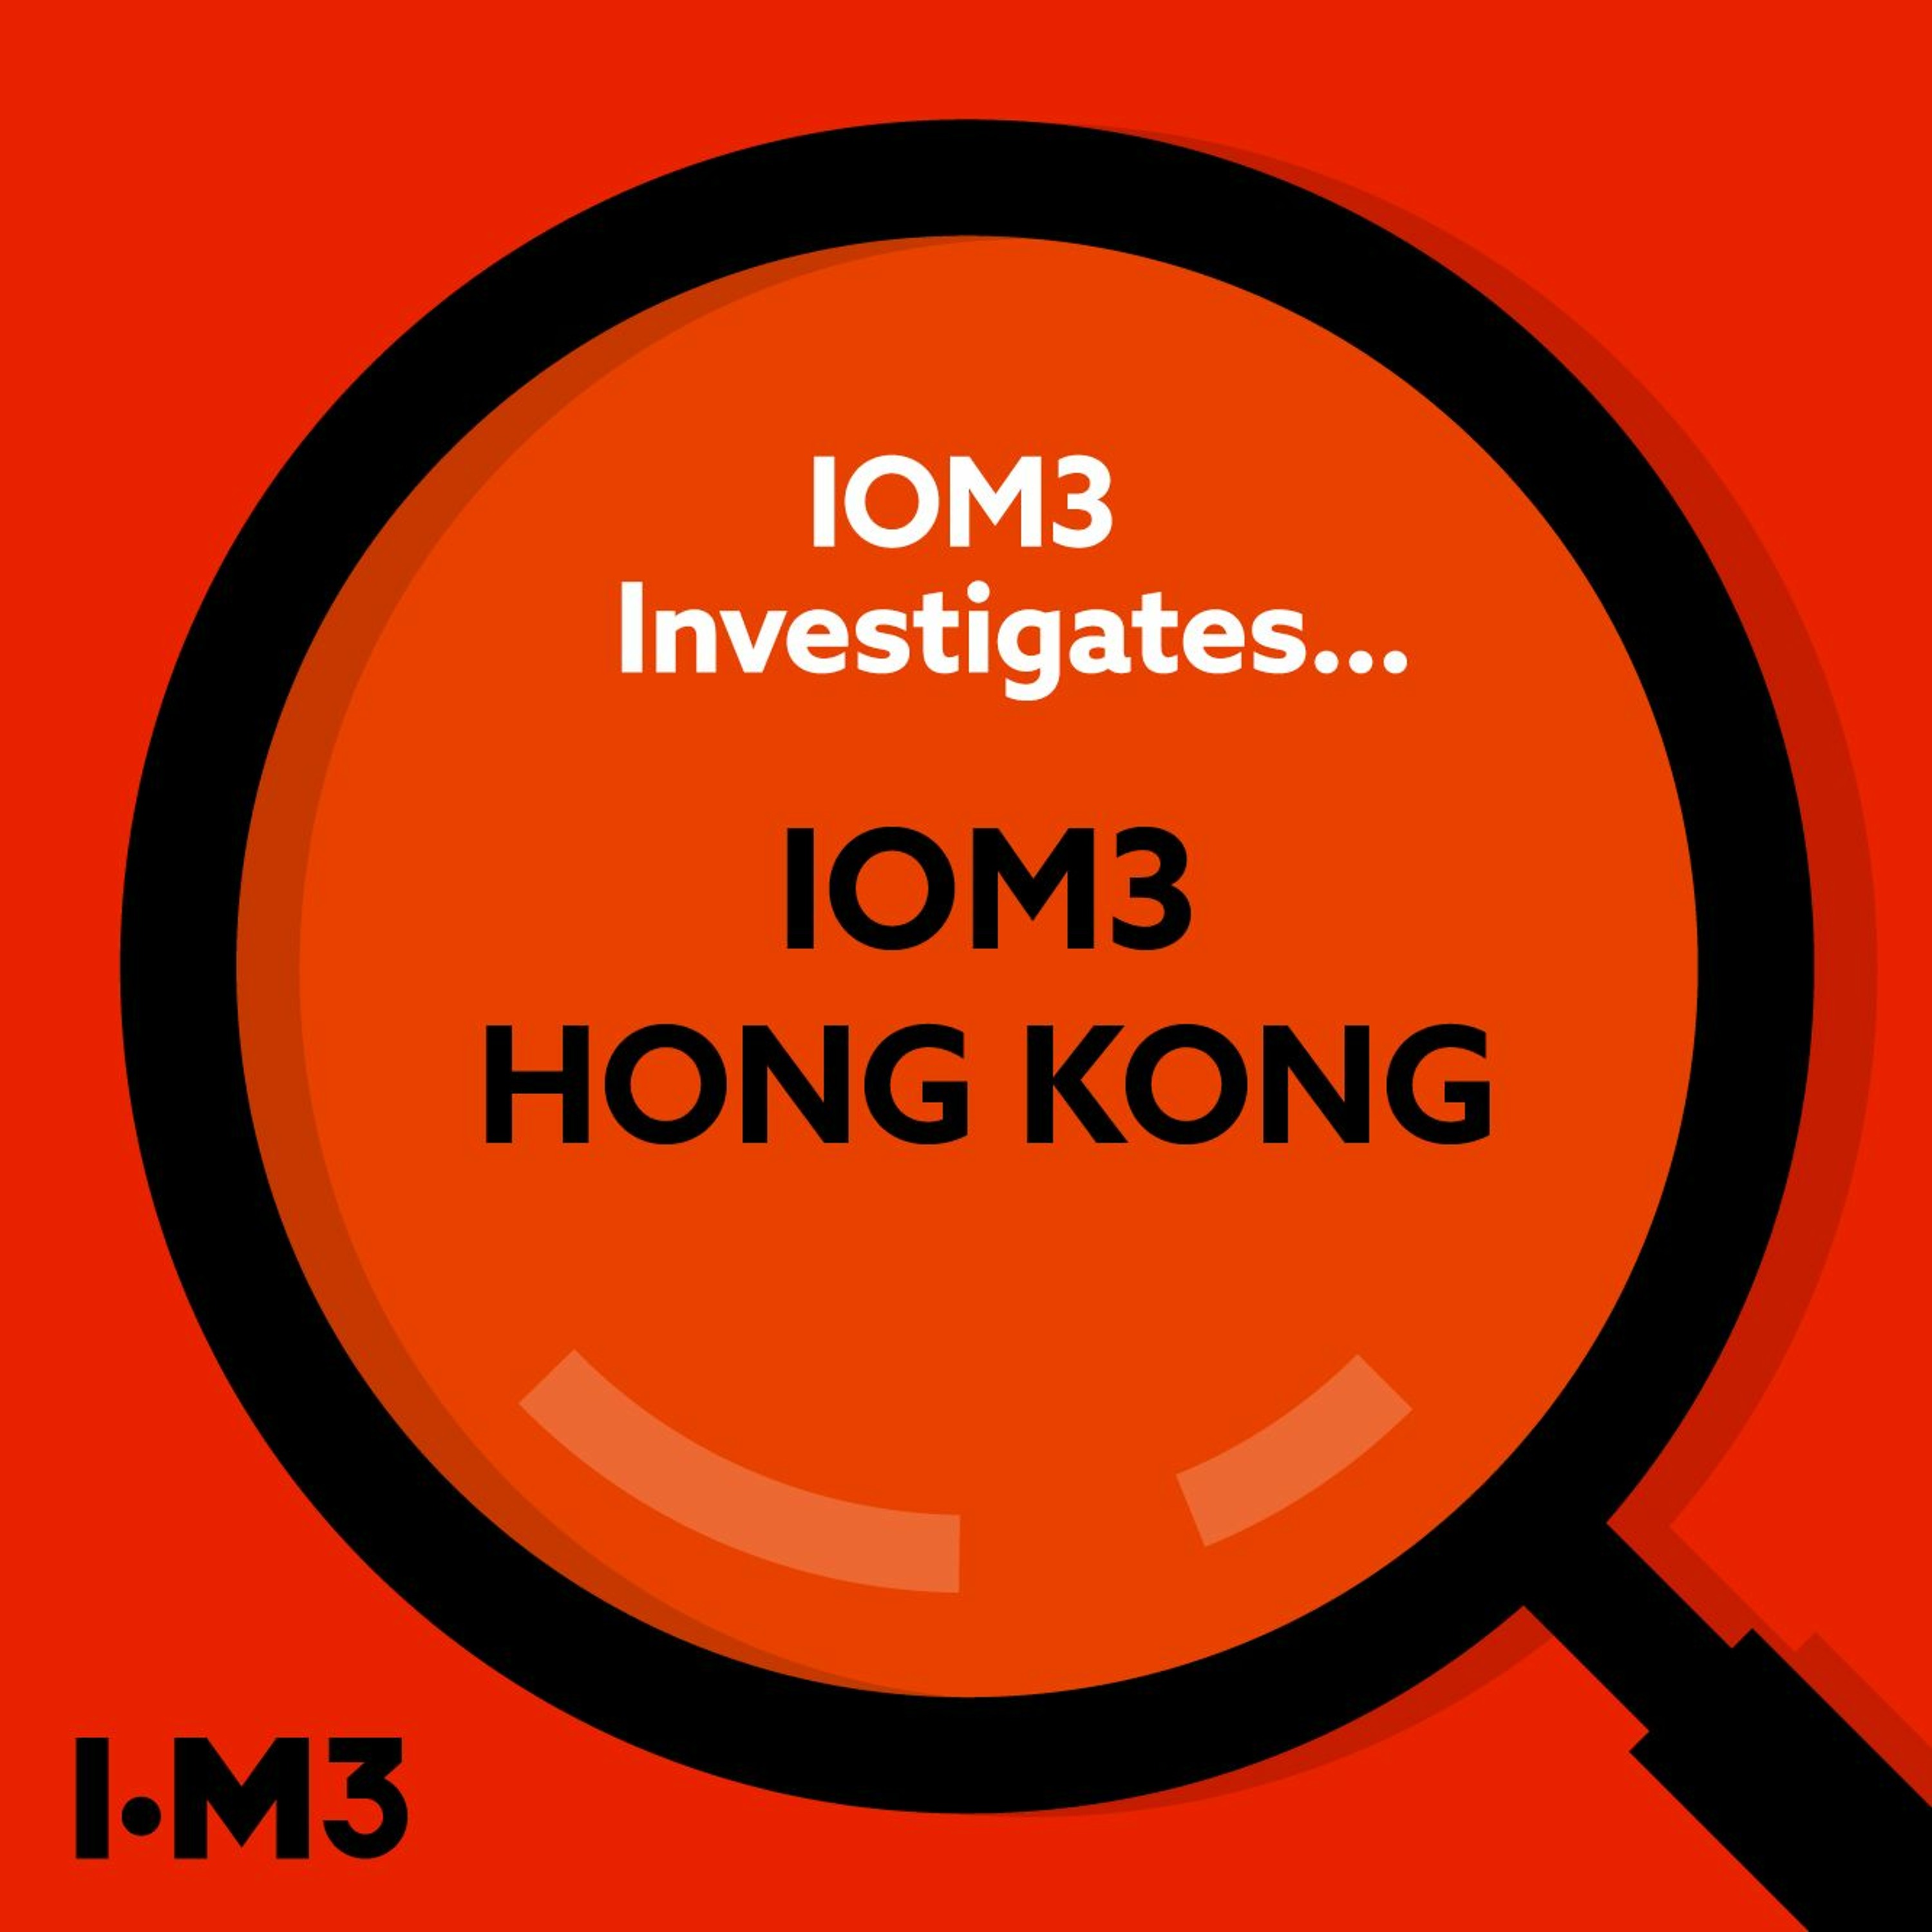 IOM3 Investigates... IOM3 Hong Kong